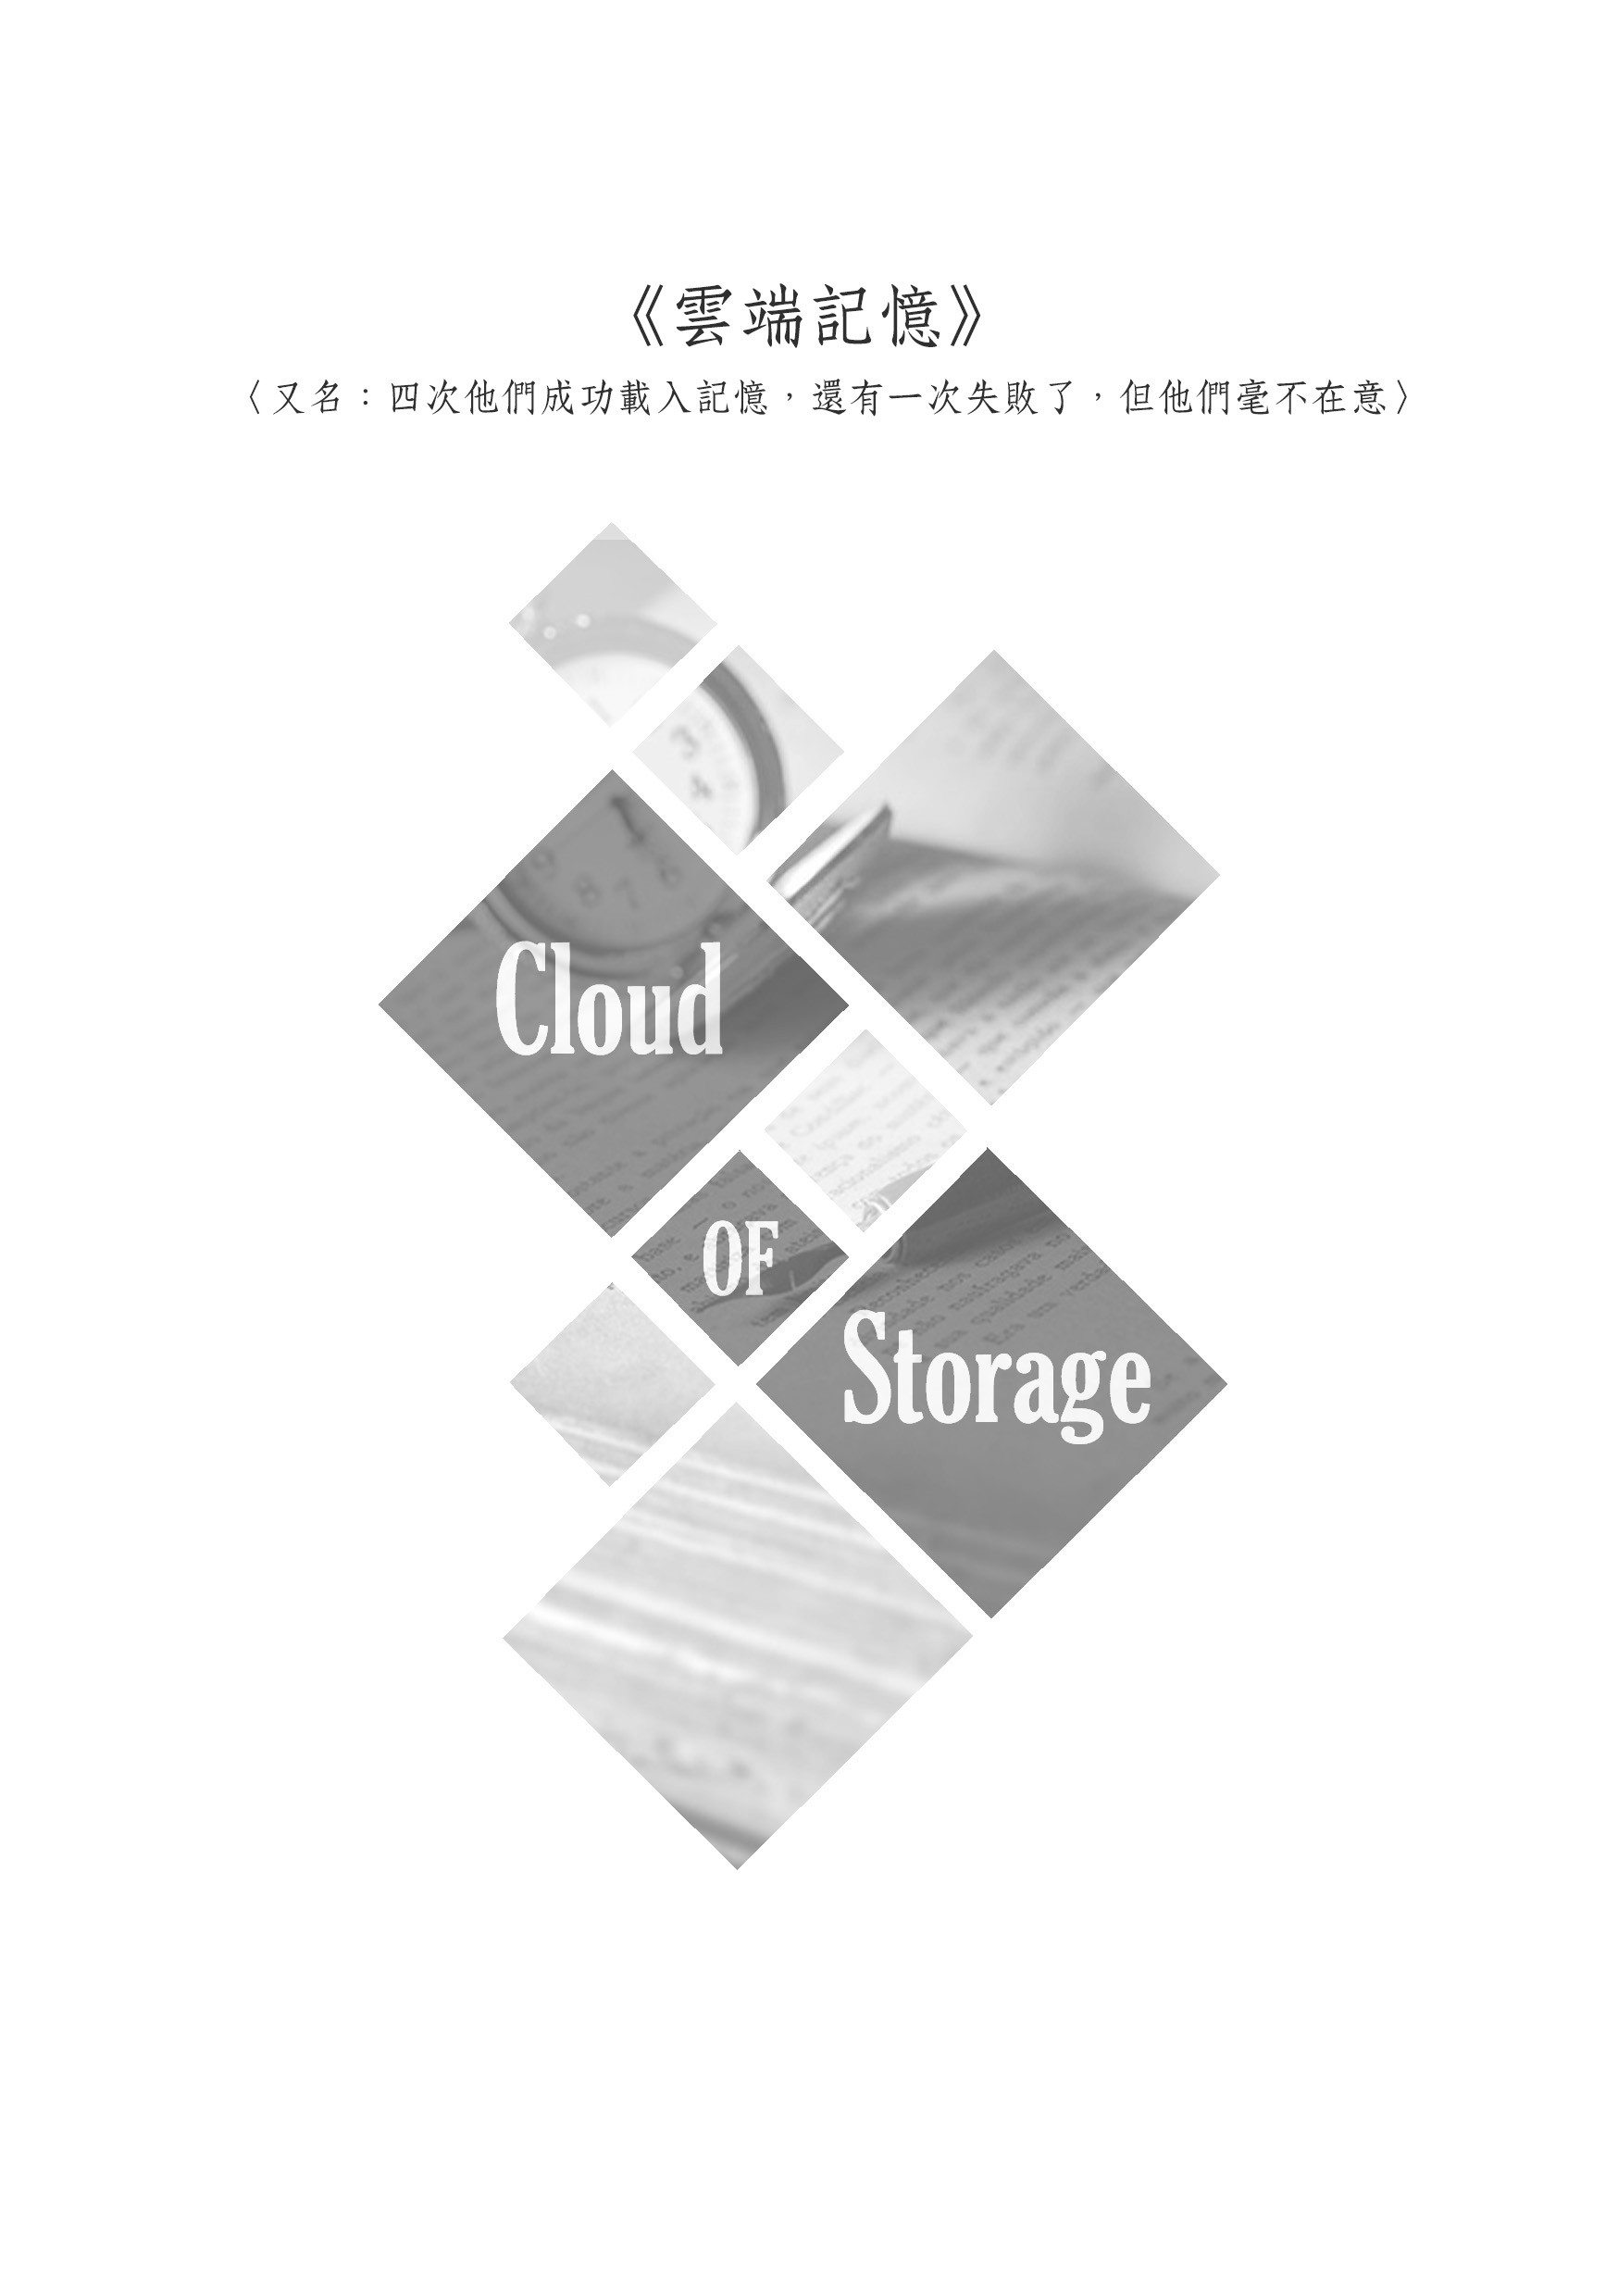 雲端記憶 Cloud of Storages 試閱圖